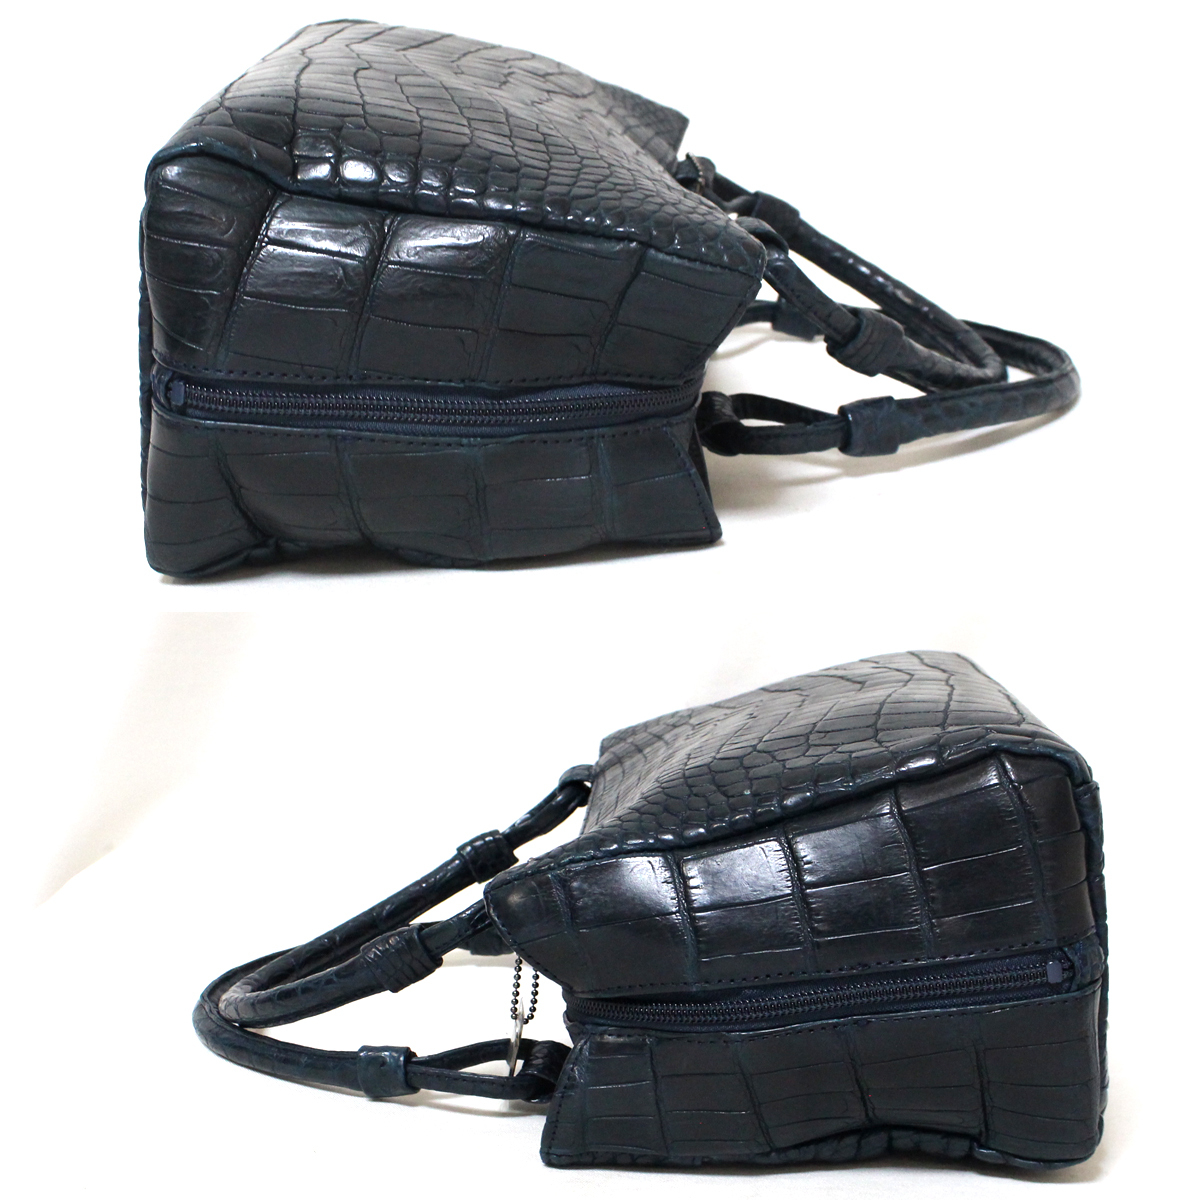  super-beauty goods JRA recognition crocodile tote bag . leather black ko shoulder bag navy JRA tag attaching handbag 28cm